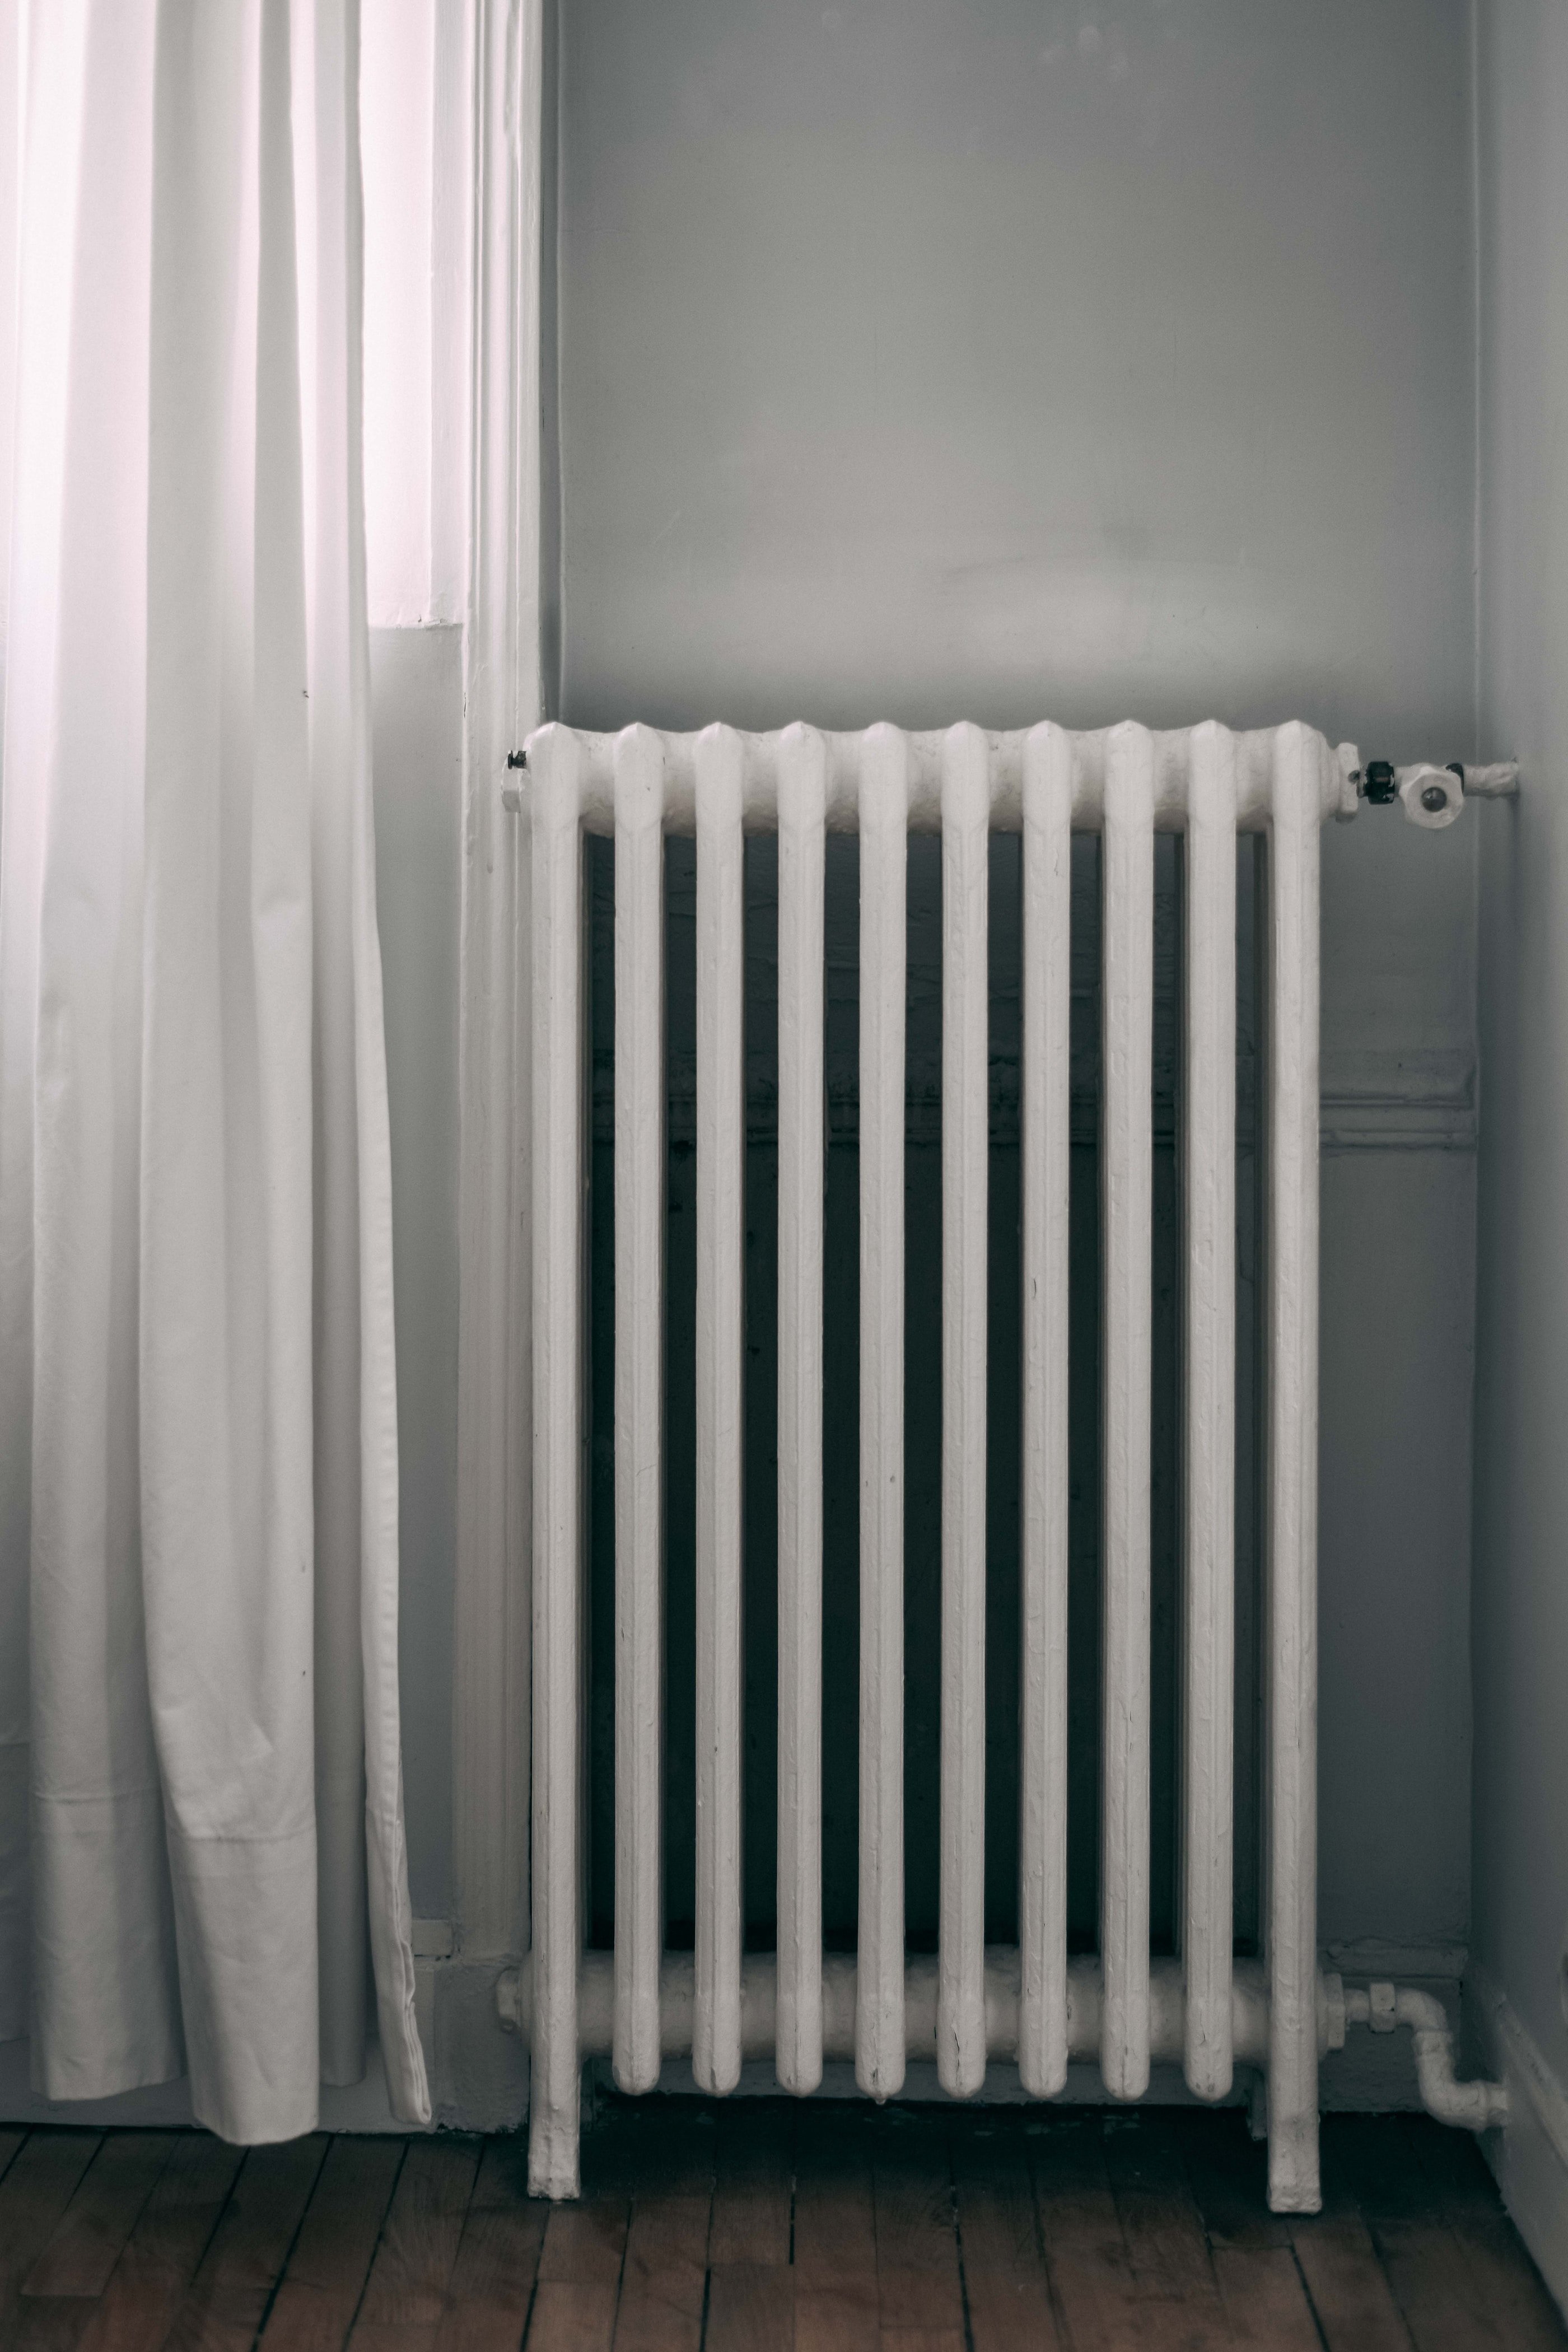 Trucos para climatizar tu casa de manera eficiente y barata